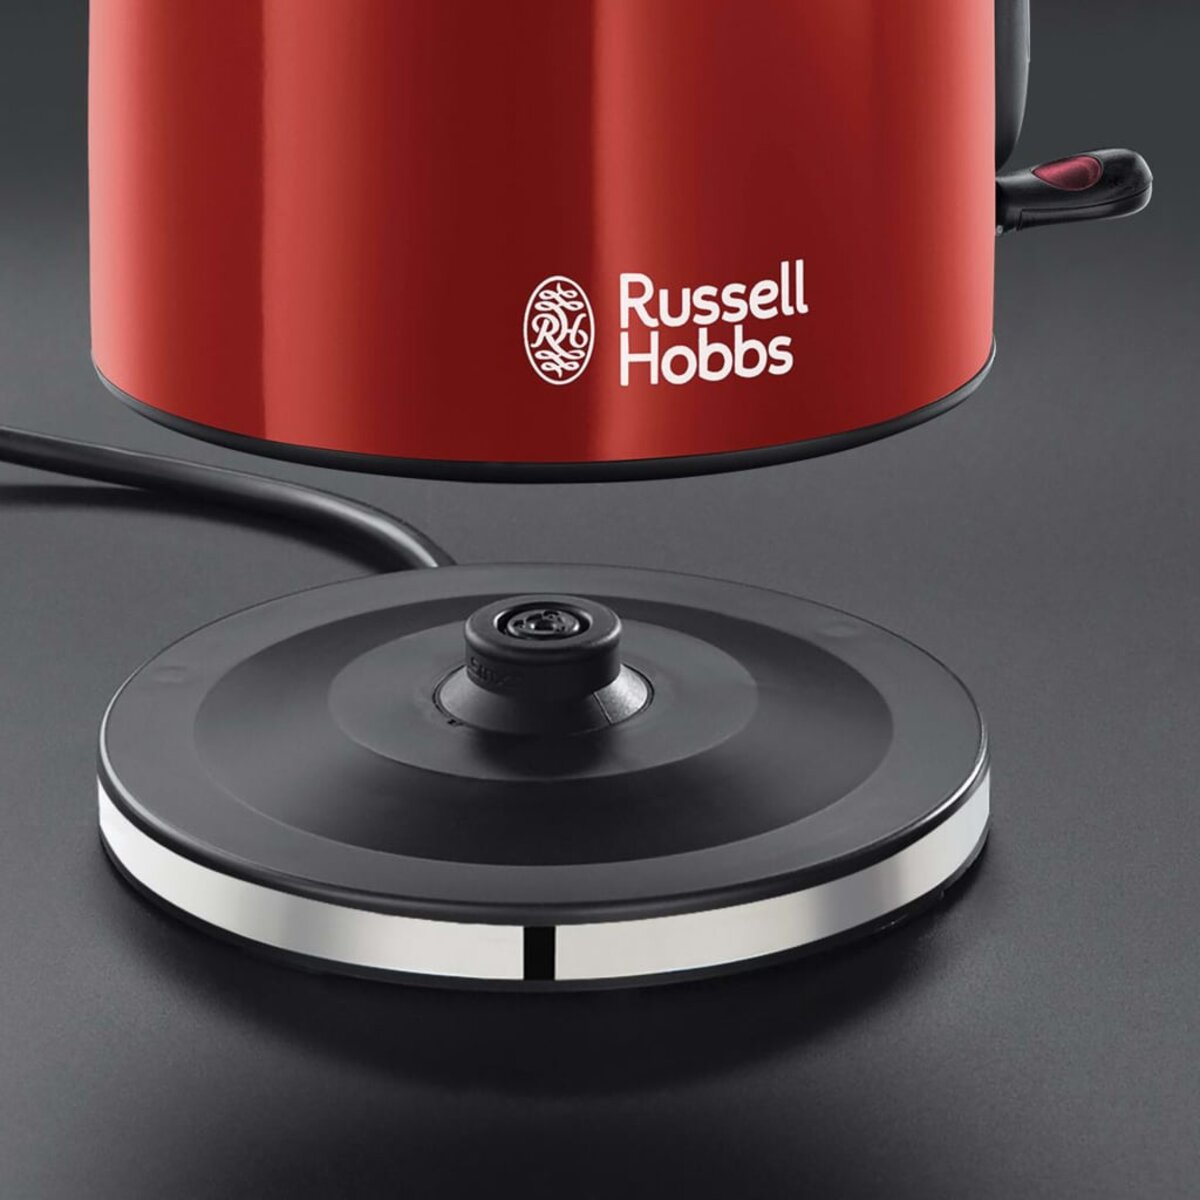 Russell Hobbs Bouilloire Electrique [Economie d'Energie] Colours Plus Rouge  (1,7L, 2400W, Ebulition Rapide, Ecoulement parfait, Niveau d'Eau Visible